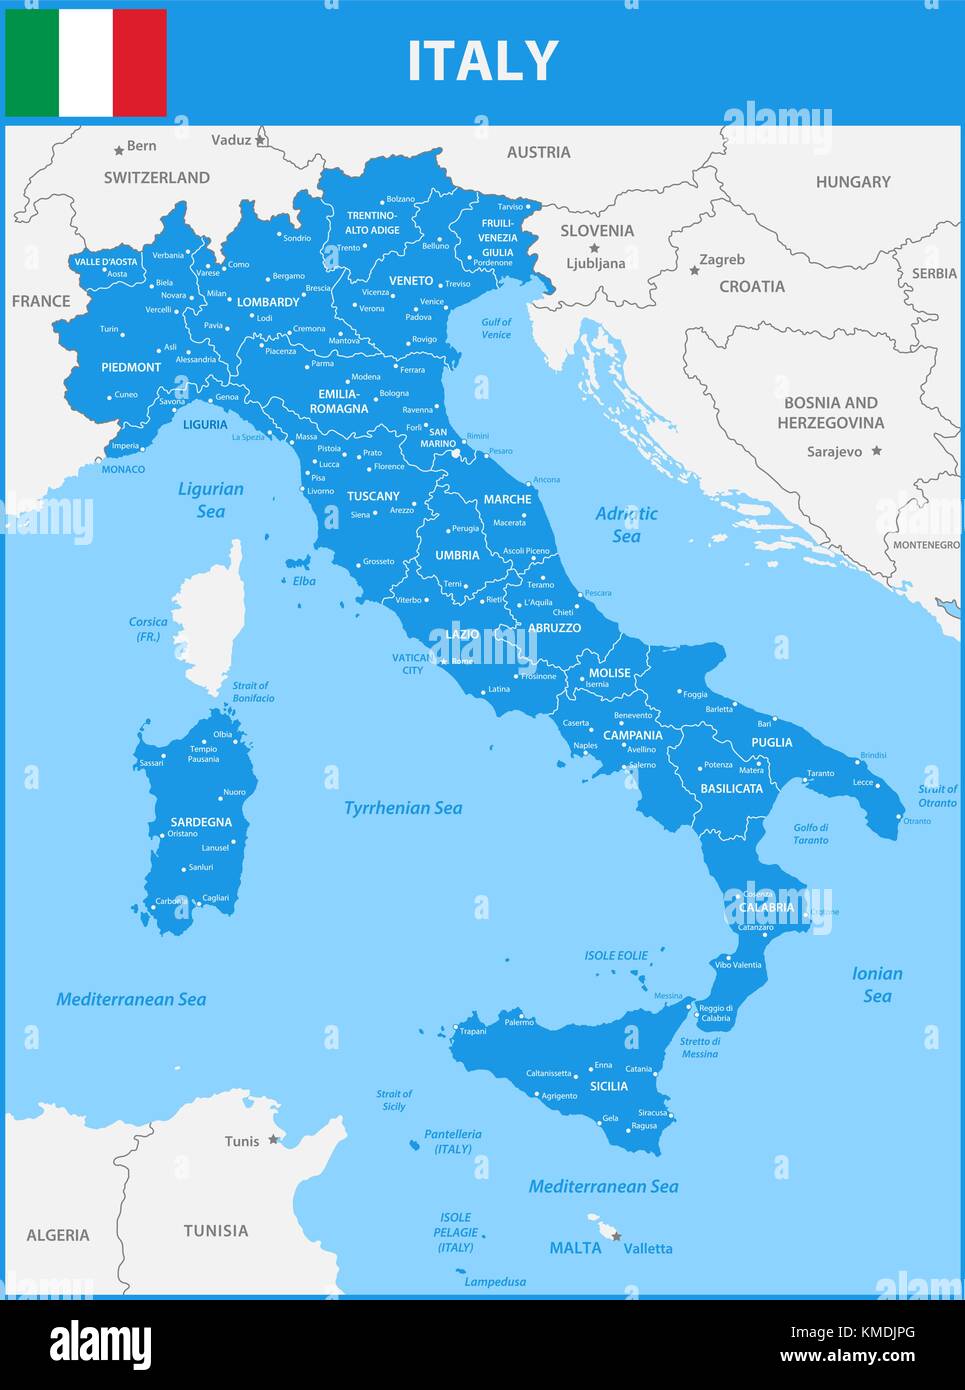 La carte détaillée de l'Italie avec les régions ou États et villes, capitale. avec des objets de la mer et les îles. et des parties de pays voisins Illustration de Vecteur